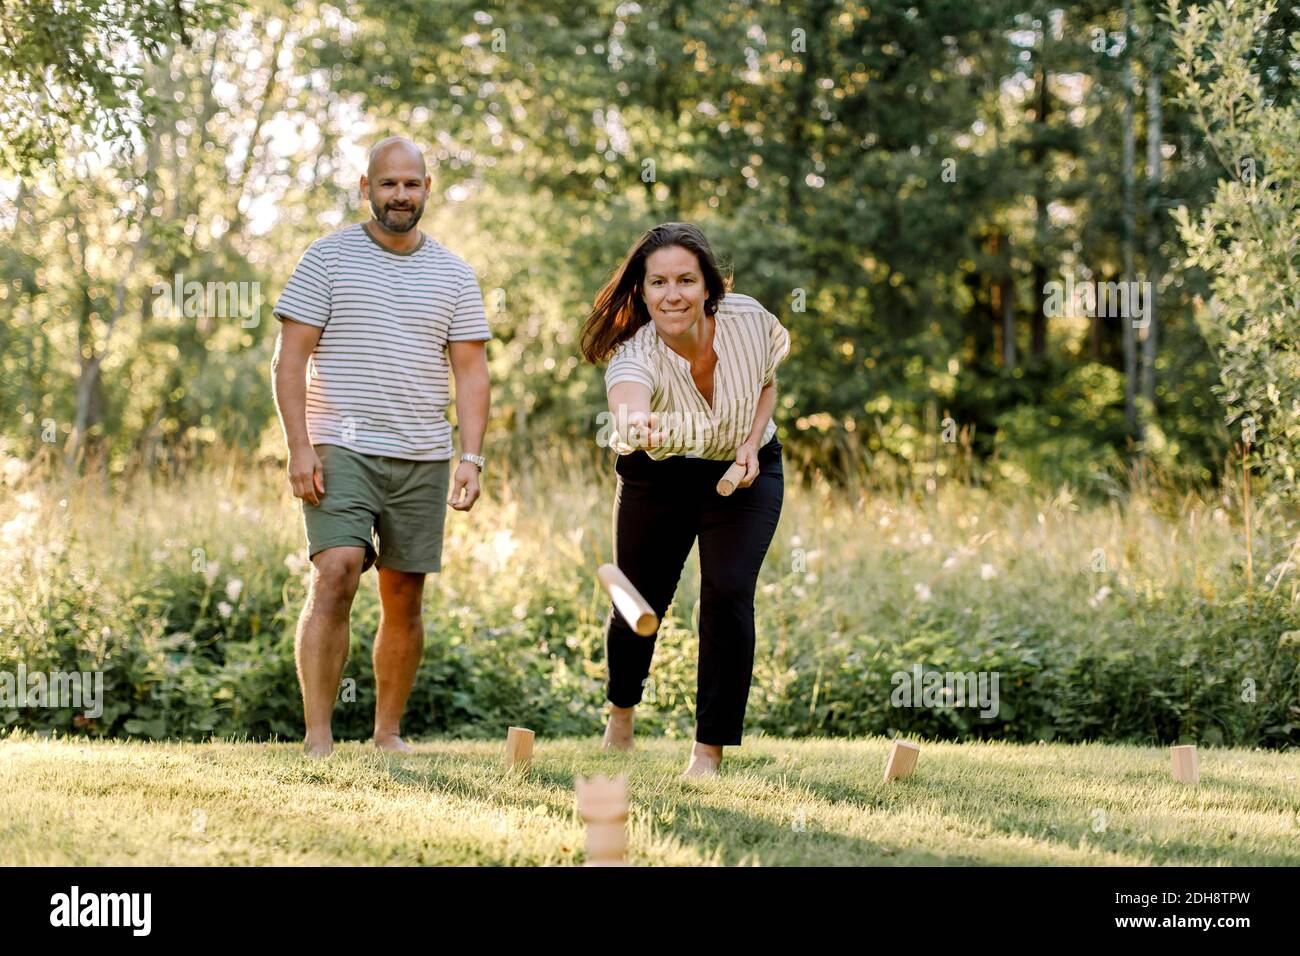 Lächelnde Frau mit männlichen Partner spielen molkky im Hof Stockfoto